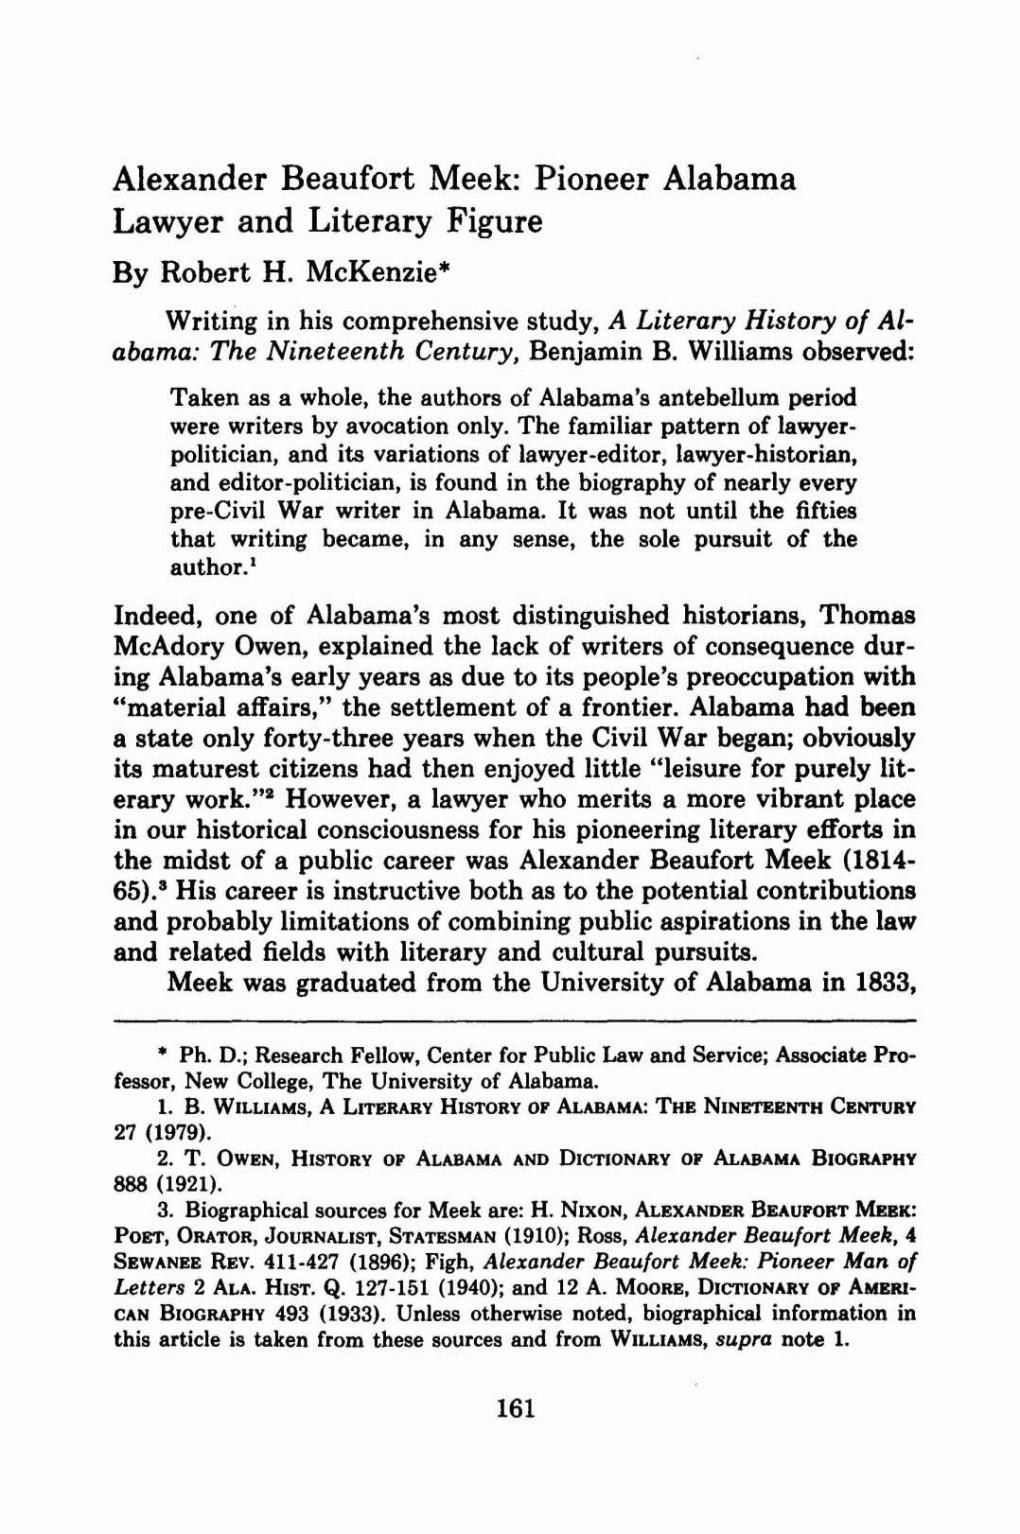 Alexander Beaufort Meek: Pioneer Alabama Lawyer and Literary Figure by Robert H